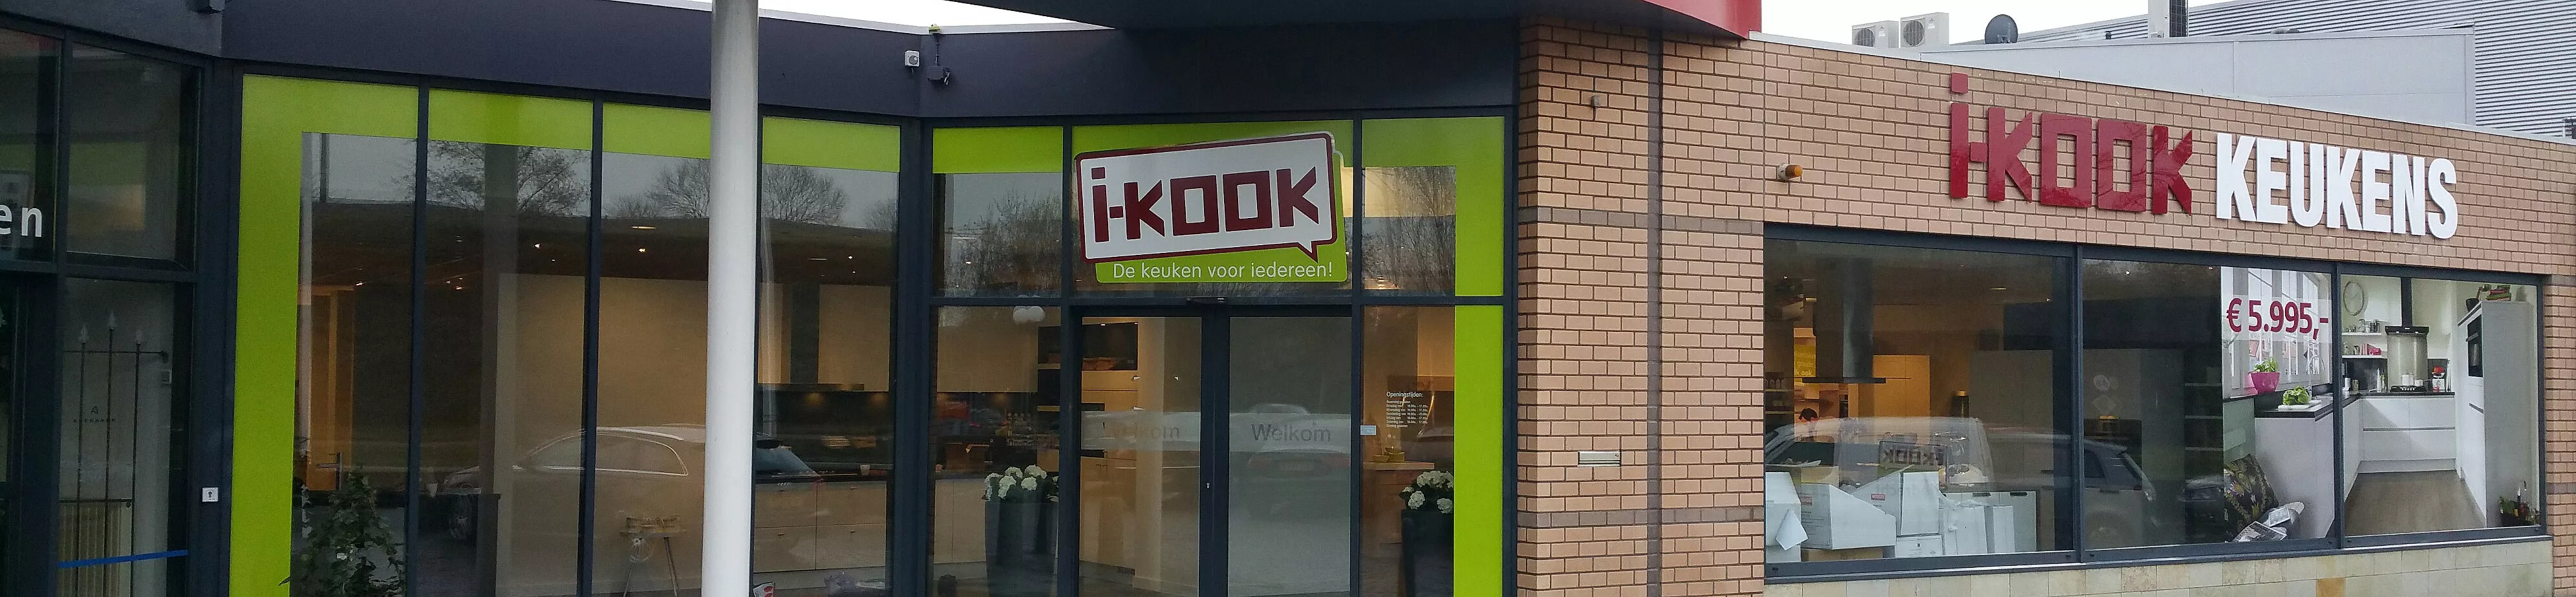 i-kook-sliedrecht-top-banner